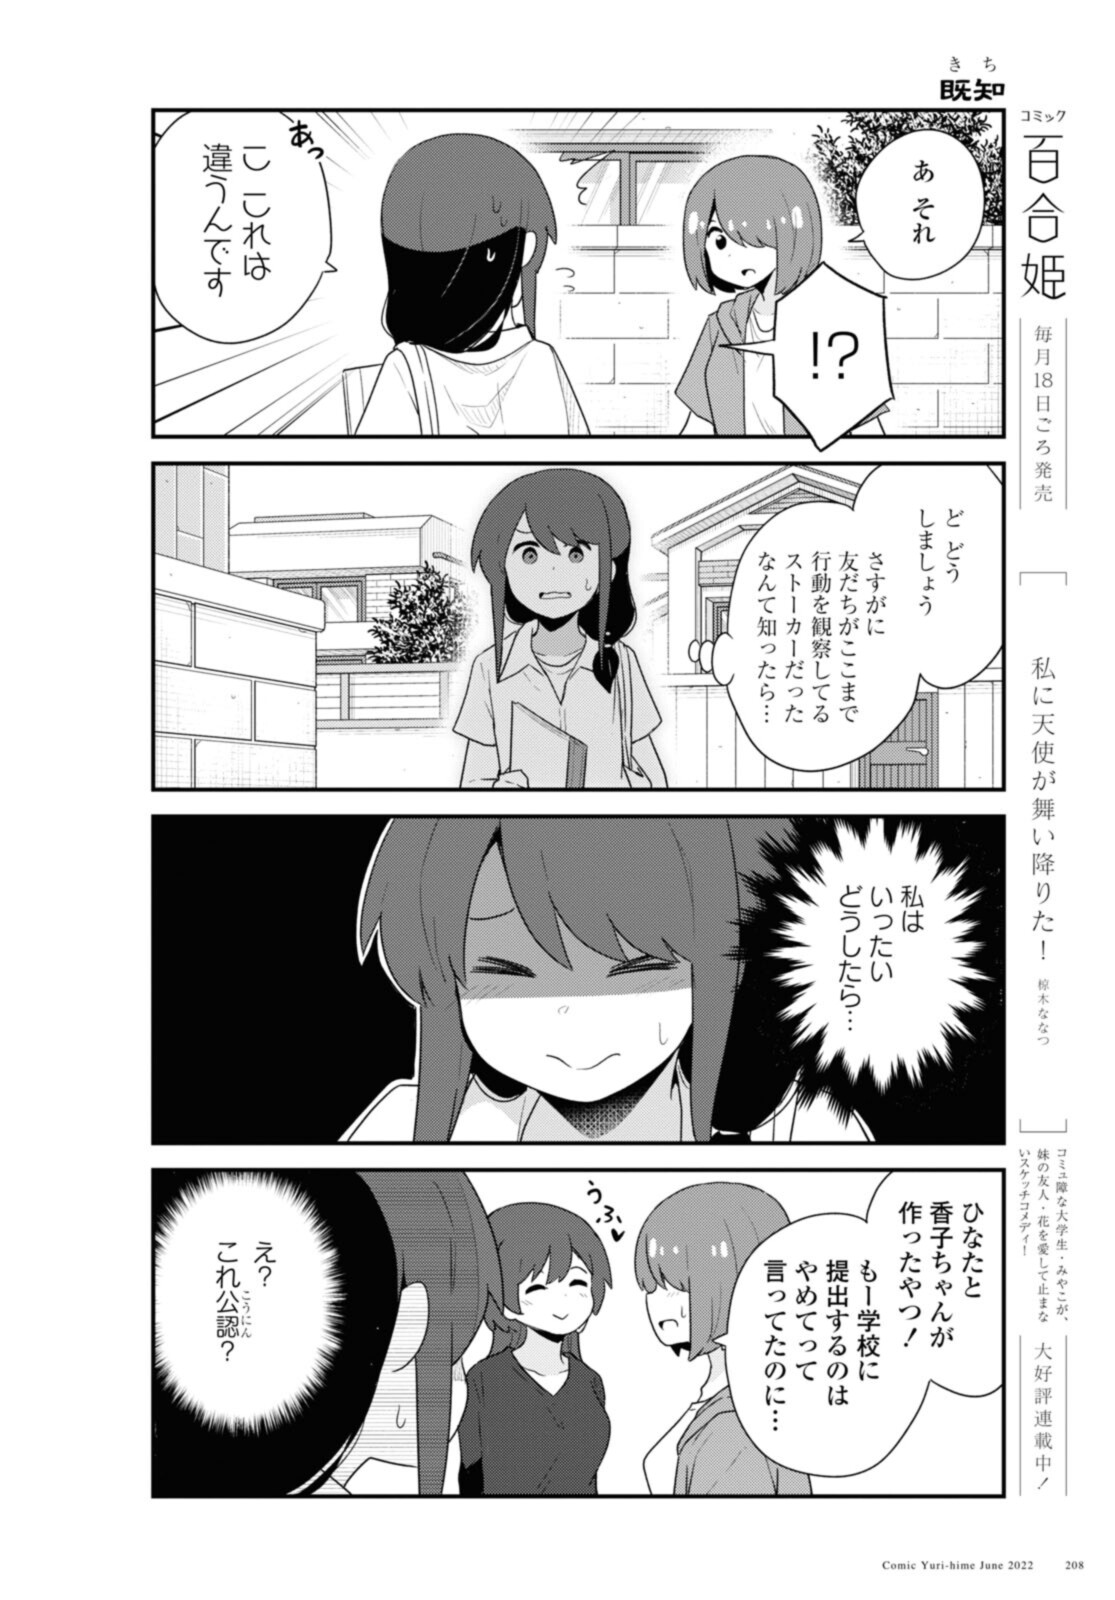 Watashi ni Tenshi ga Maiorita! - Chapter 96 - Page 14